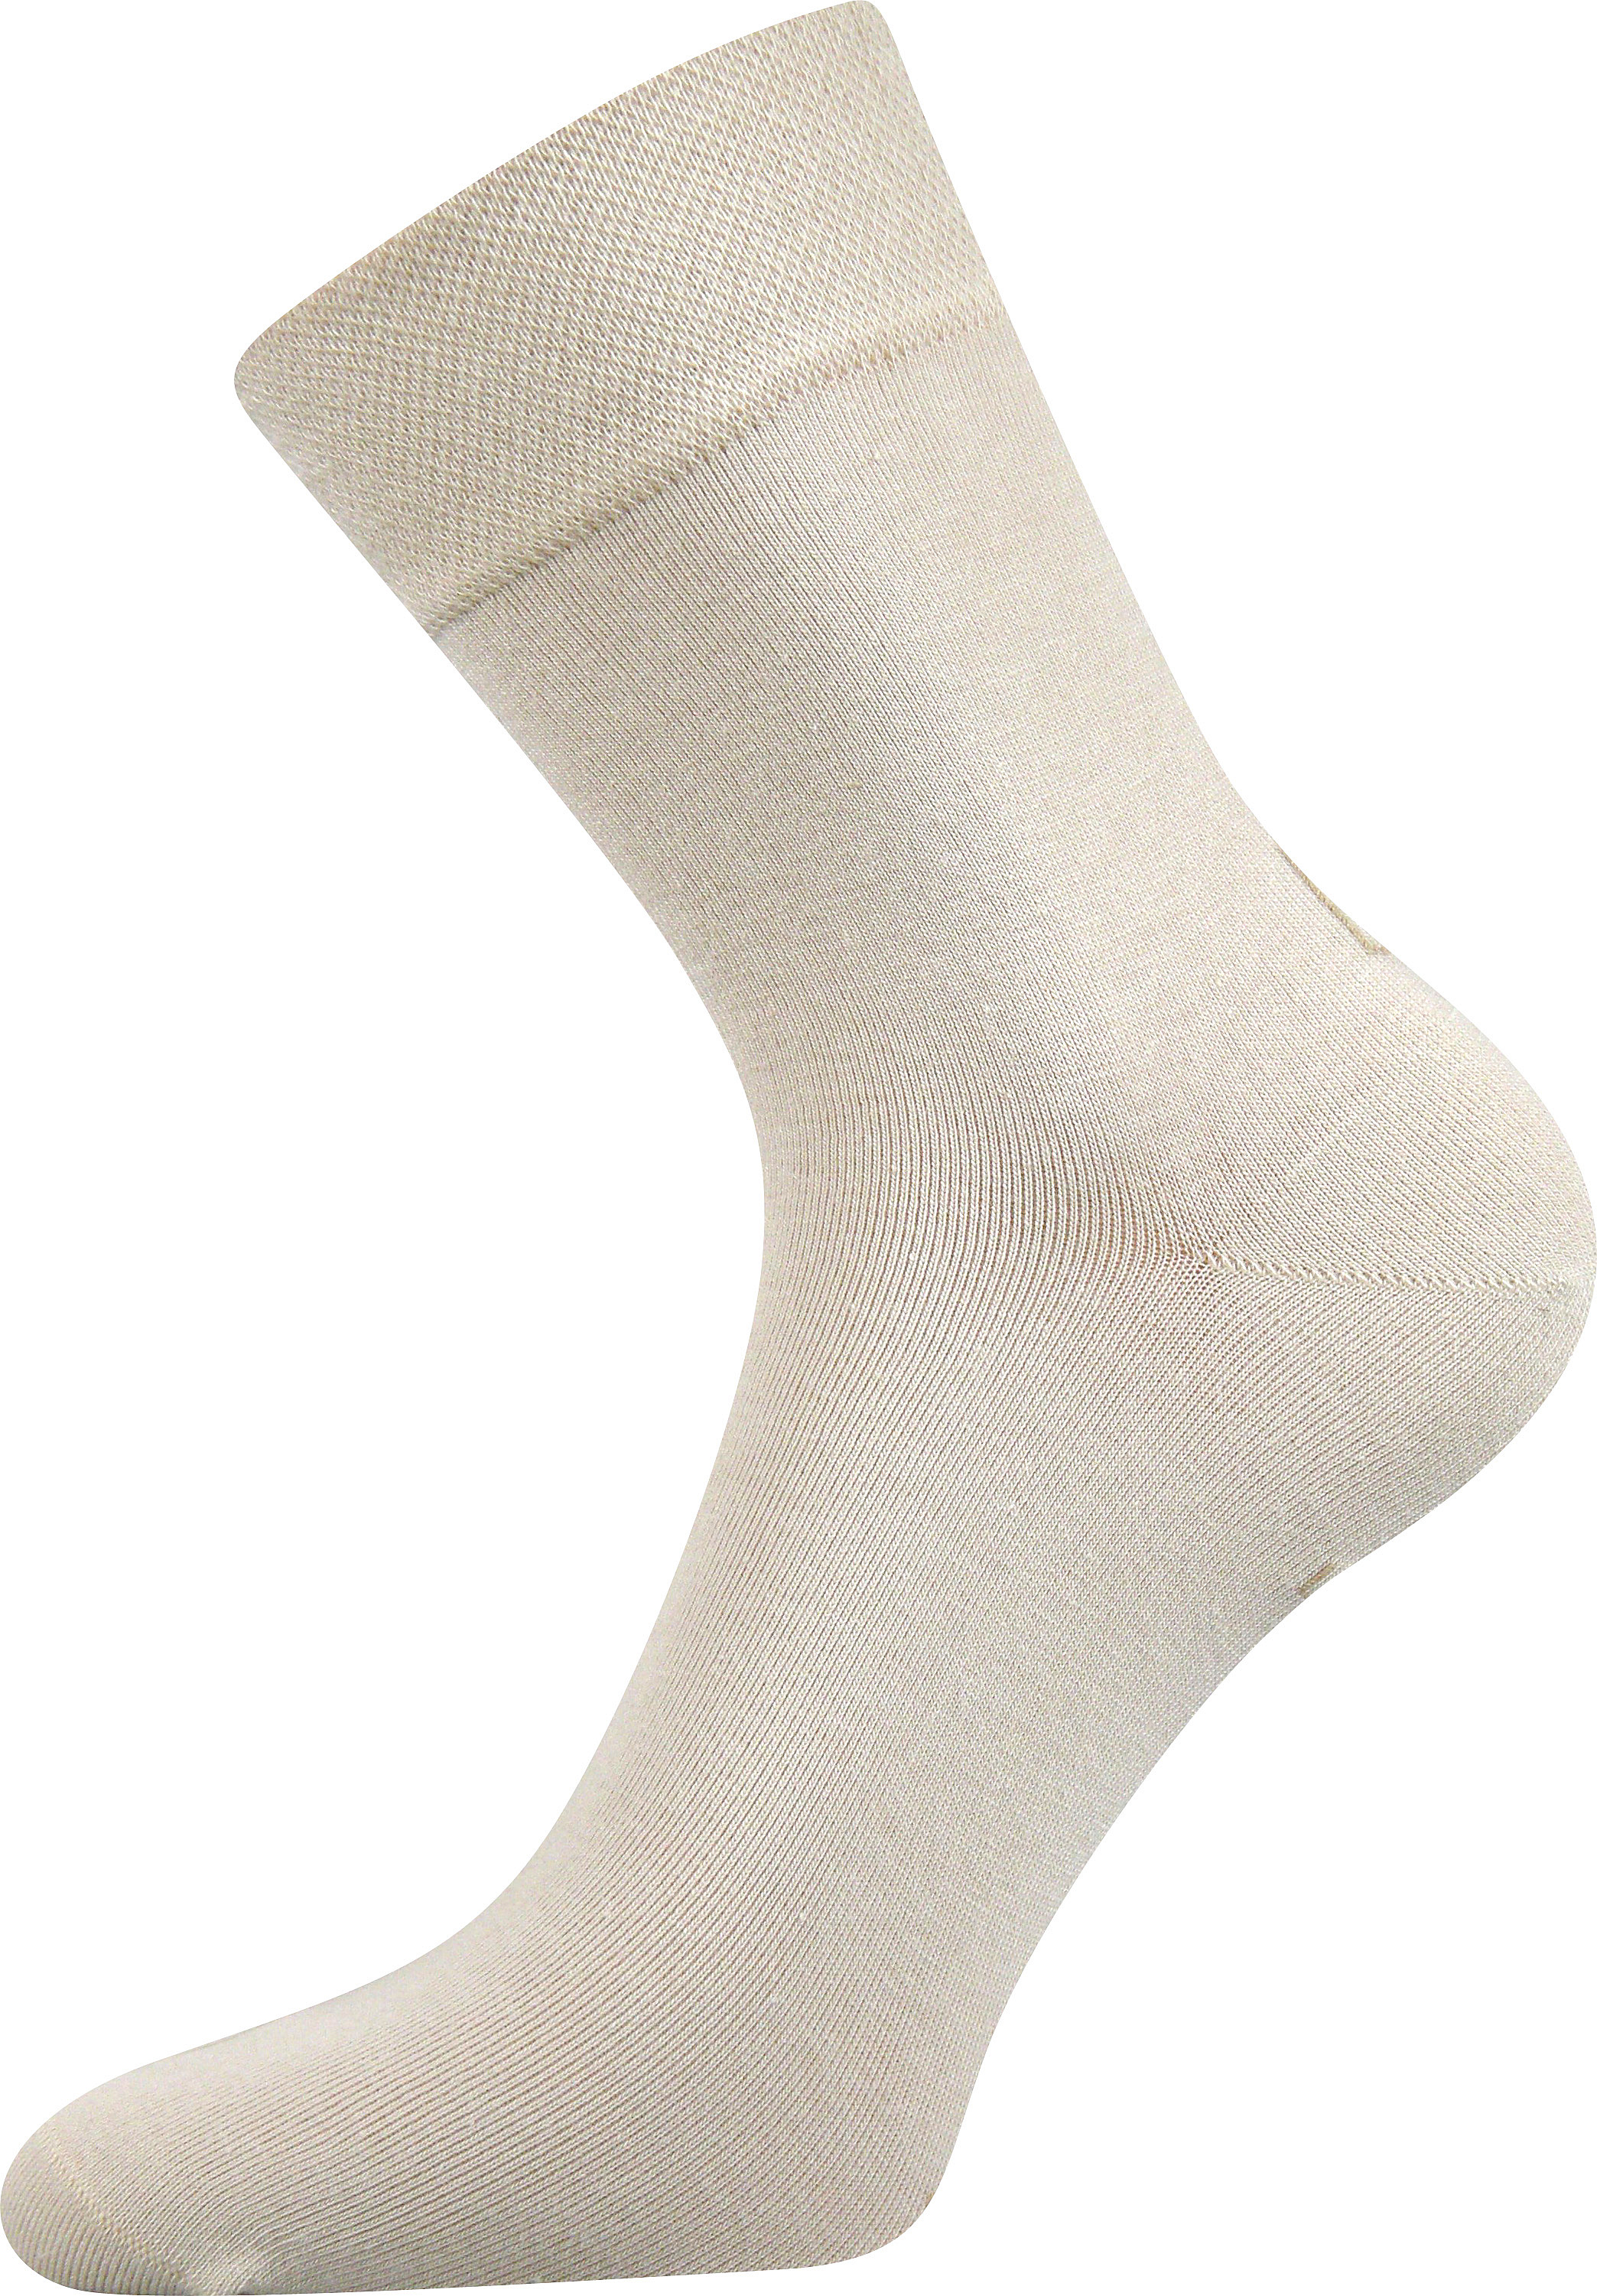 Ponožky společenské Lonka Haner - béžové, 47-50